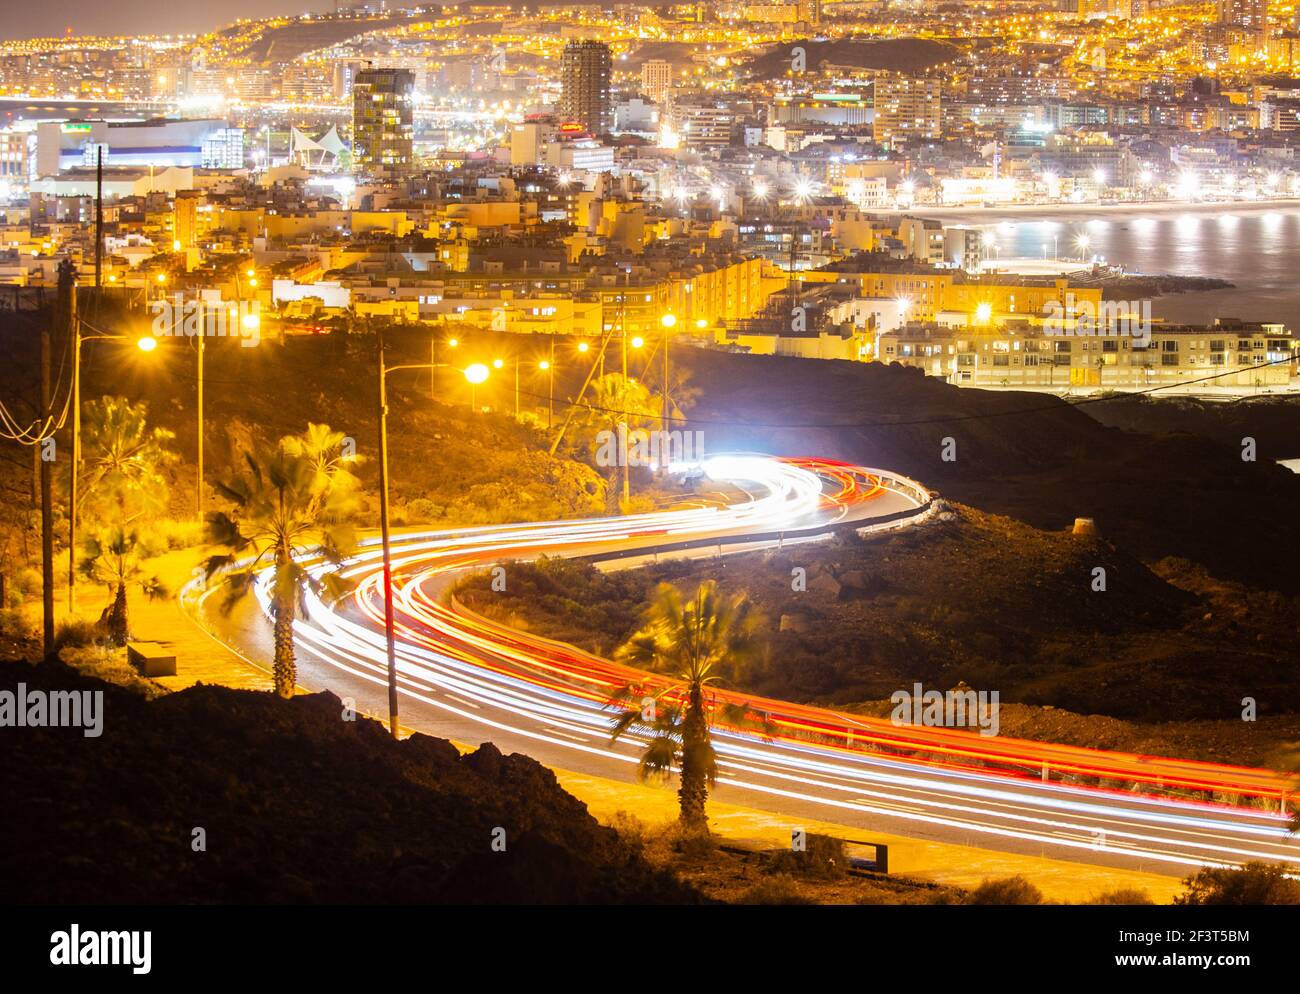 Las Palmas, Gran Canaria, Kanarische Inseln, Spanien. März 2021, 17th. Blick über die Stadt Las Palmas bei Nacht mit Lichtpfaden, die im Vordergrund die schnapende Straße beleuchten. Kredit: Alan Dawson/Alamy Live Nachrichten. Stockfoto